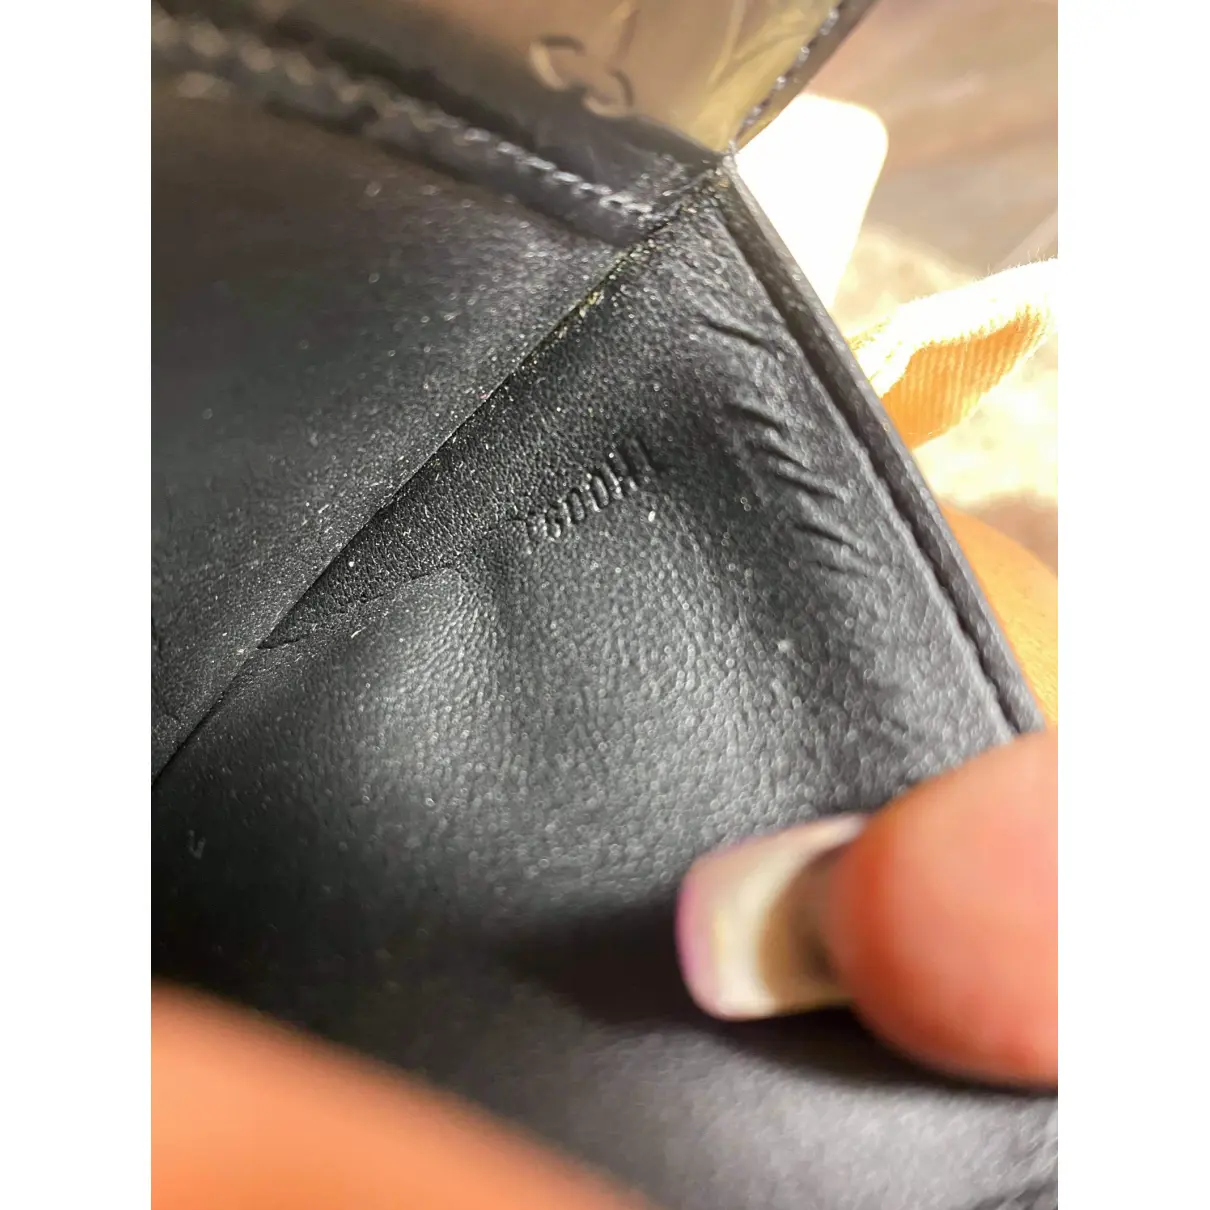 Monceau patent leather clutch bag Louis Vuitton